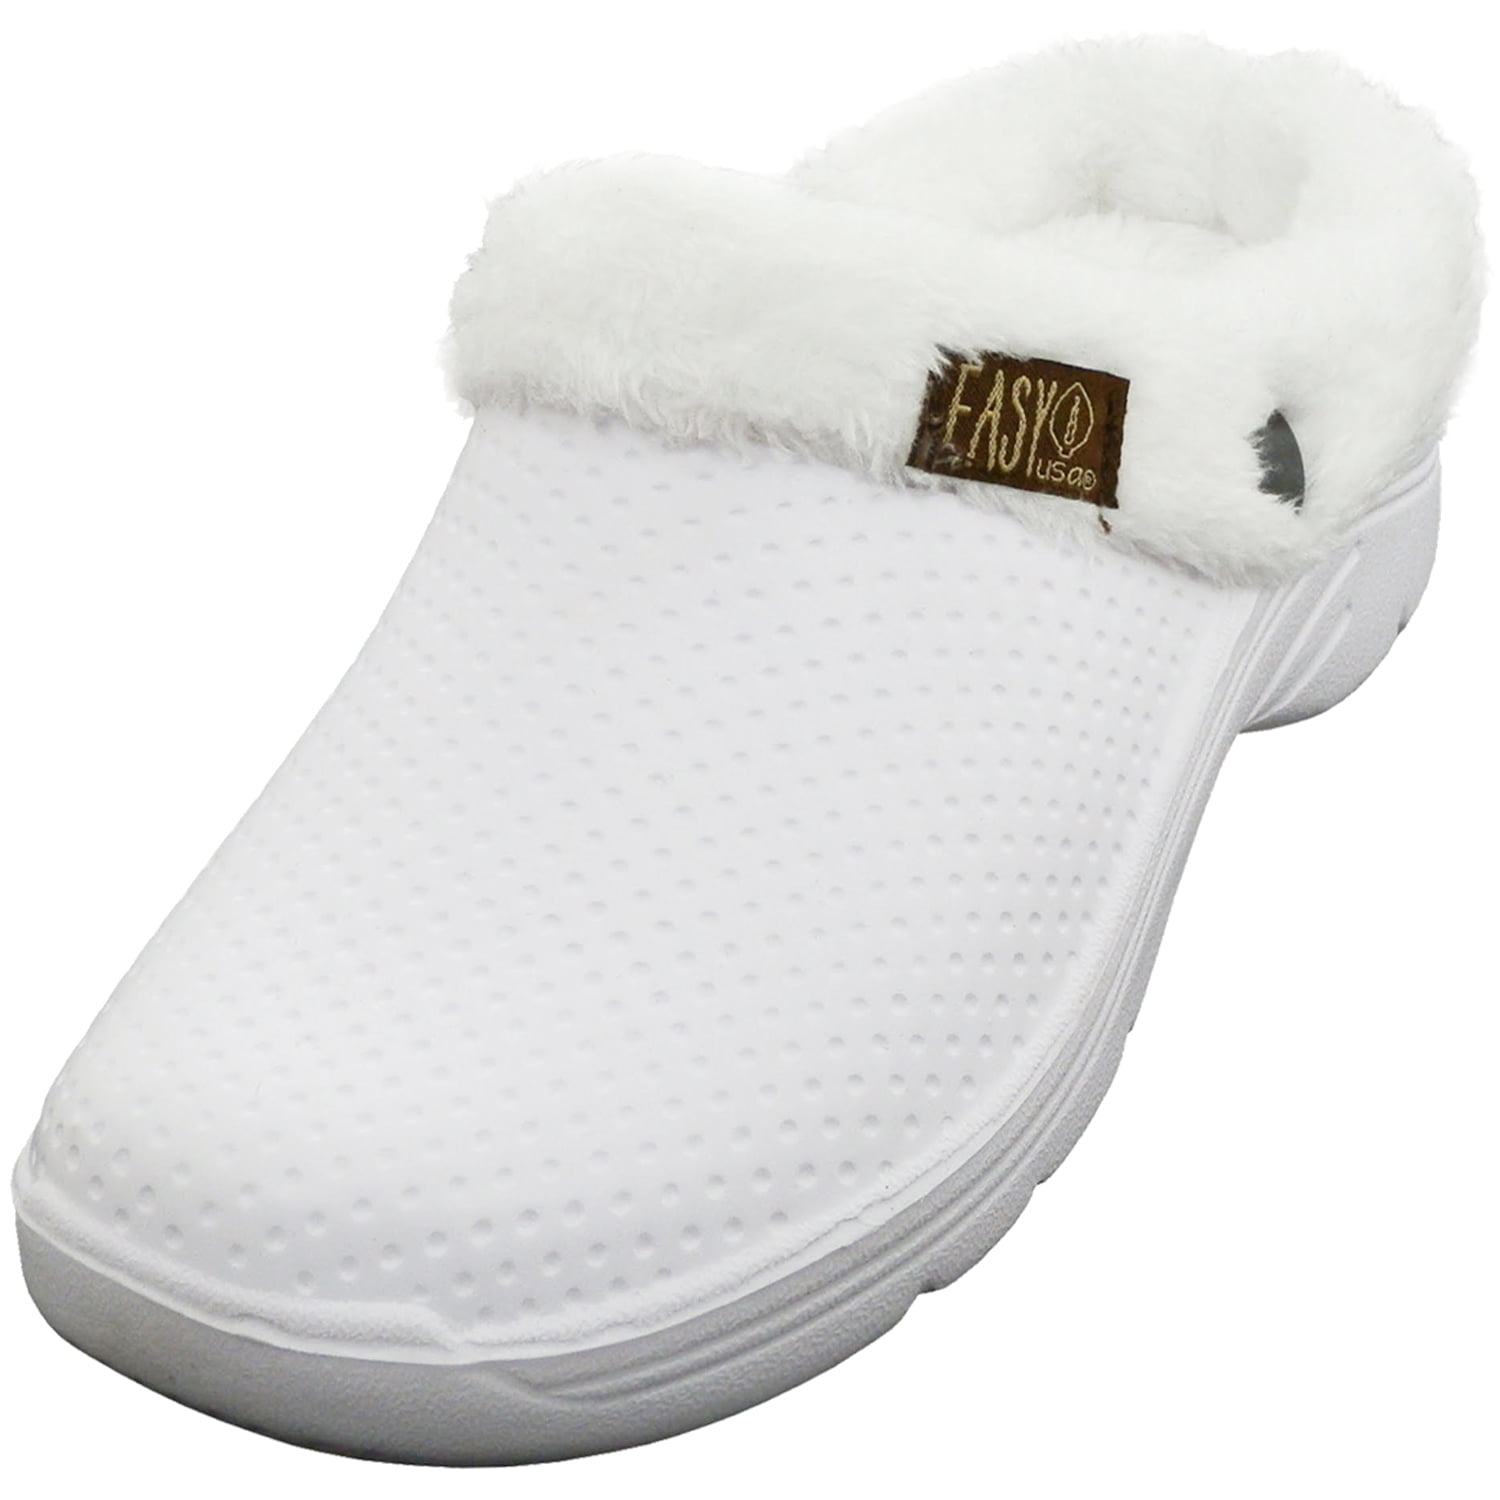 Bkolouuoe Slippers Fluffy Fleece Lined Winter Indoor Outdoor Non-Slip House Home Slip on Garden Shoes Men Women